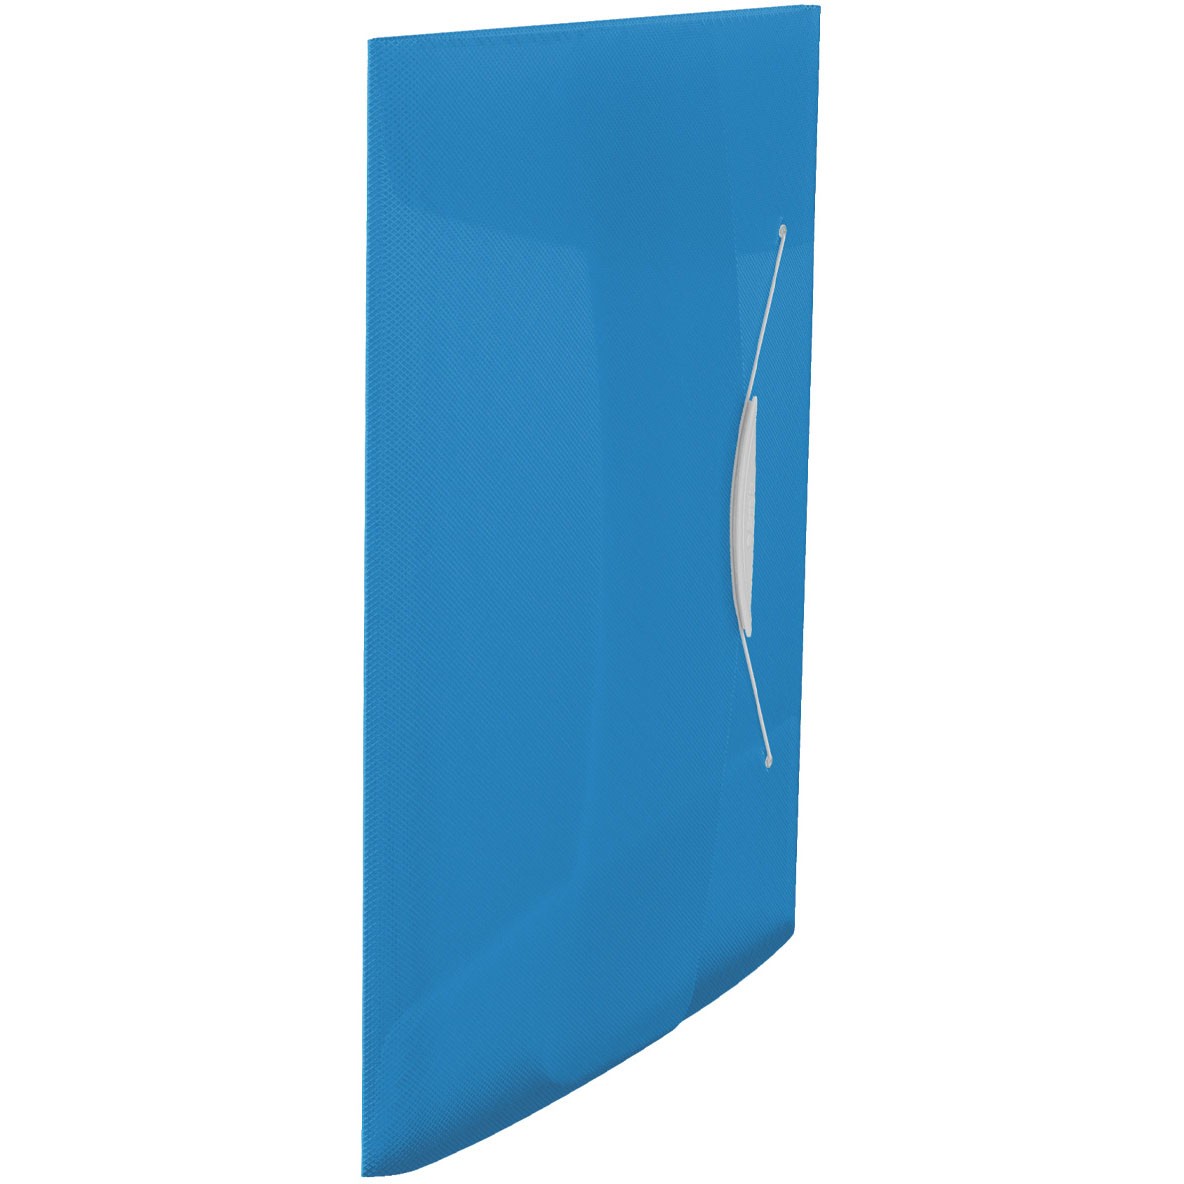 Esselte VIVIDA elastikmappe med 3 klapper i A4 i farven blå